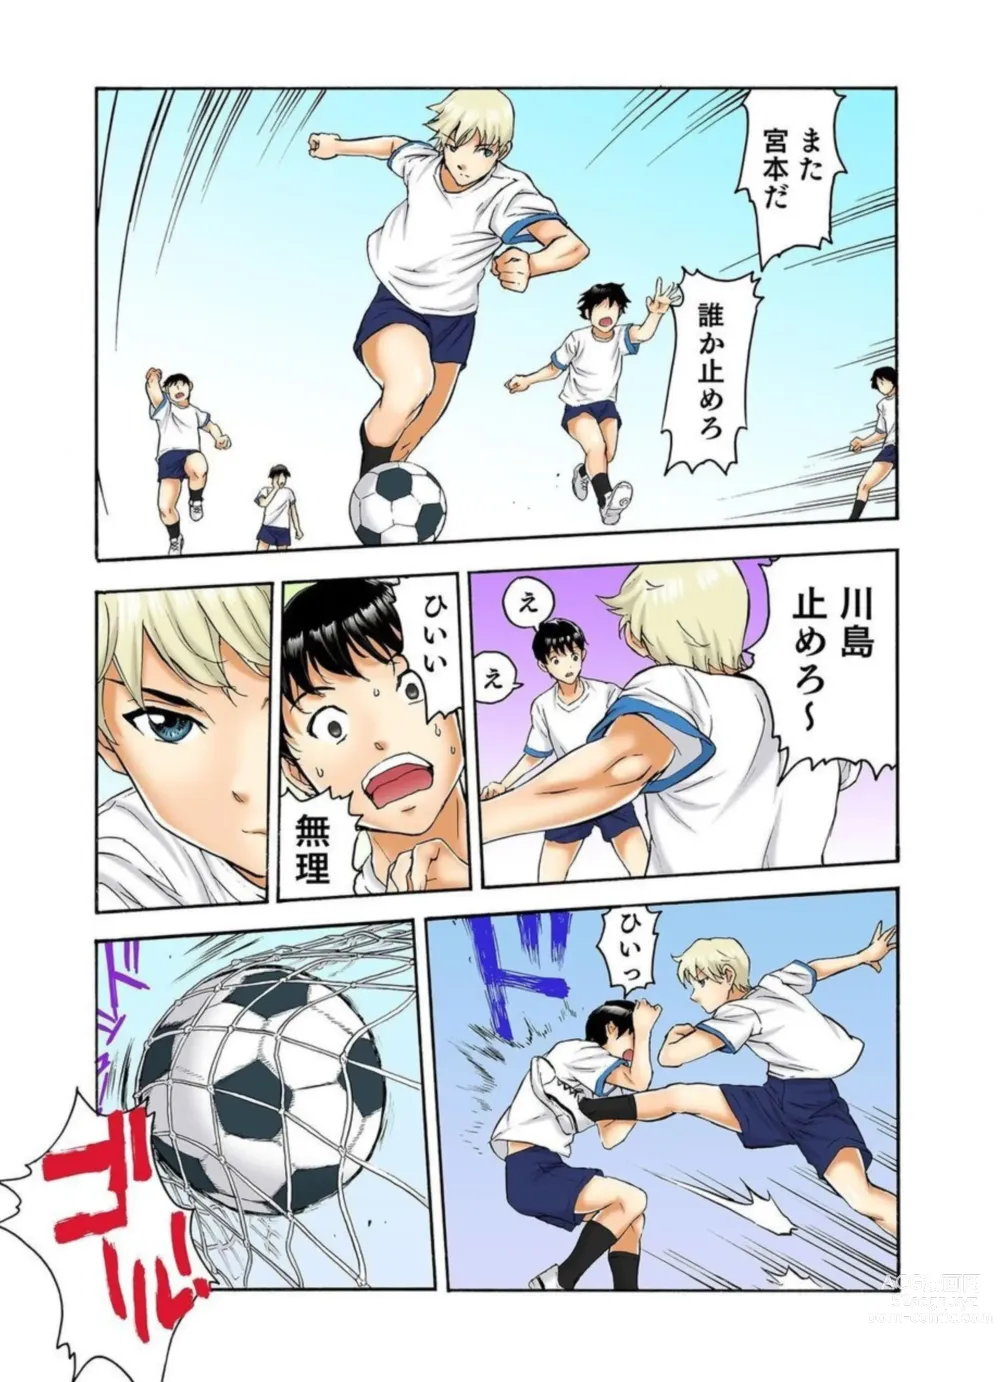 Page 9 of manga Tenkousei no Seki ga Ore no Hiza no Ue ni Kimatta no de Hame Temita Dai 2-bu 1-2